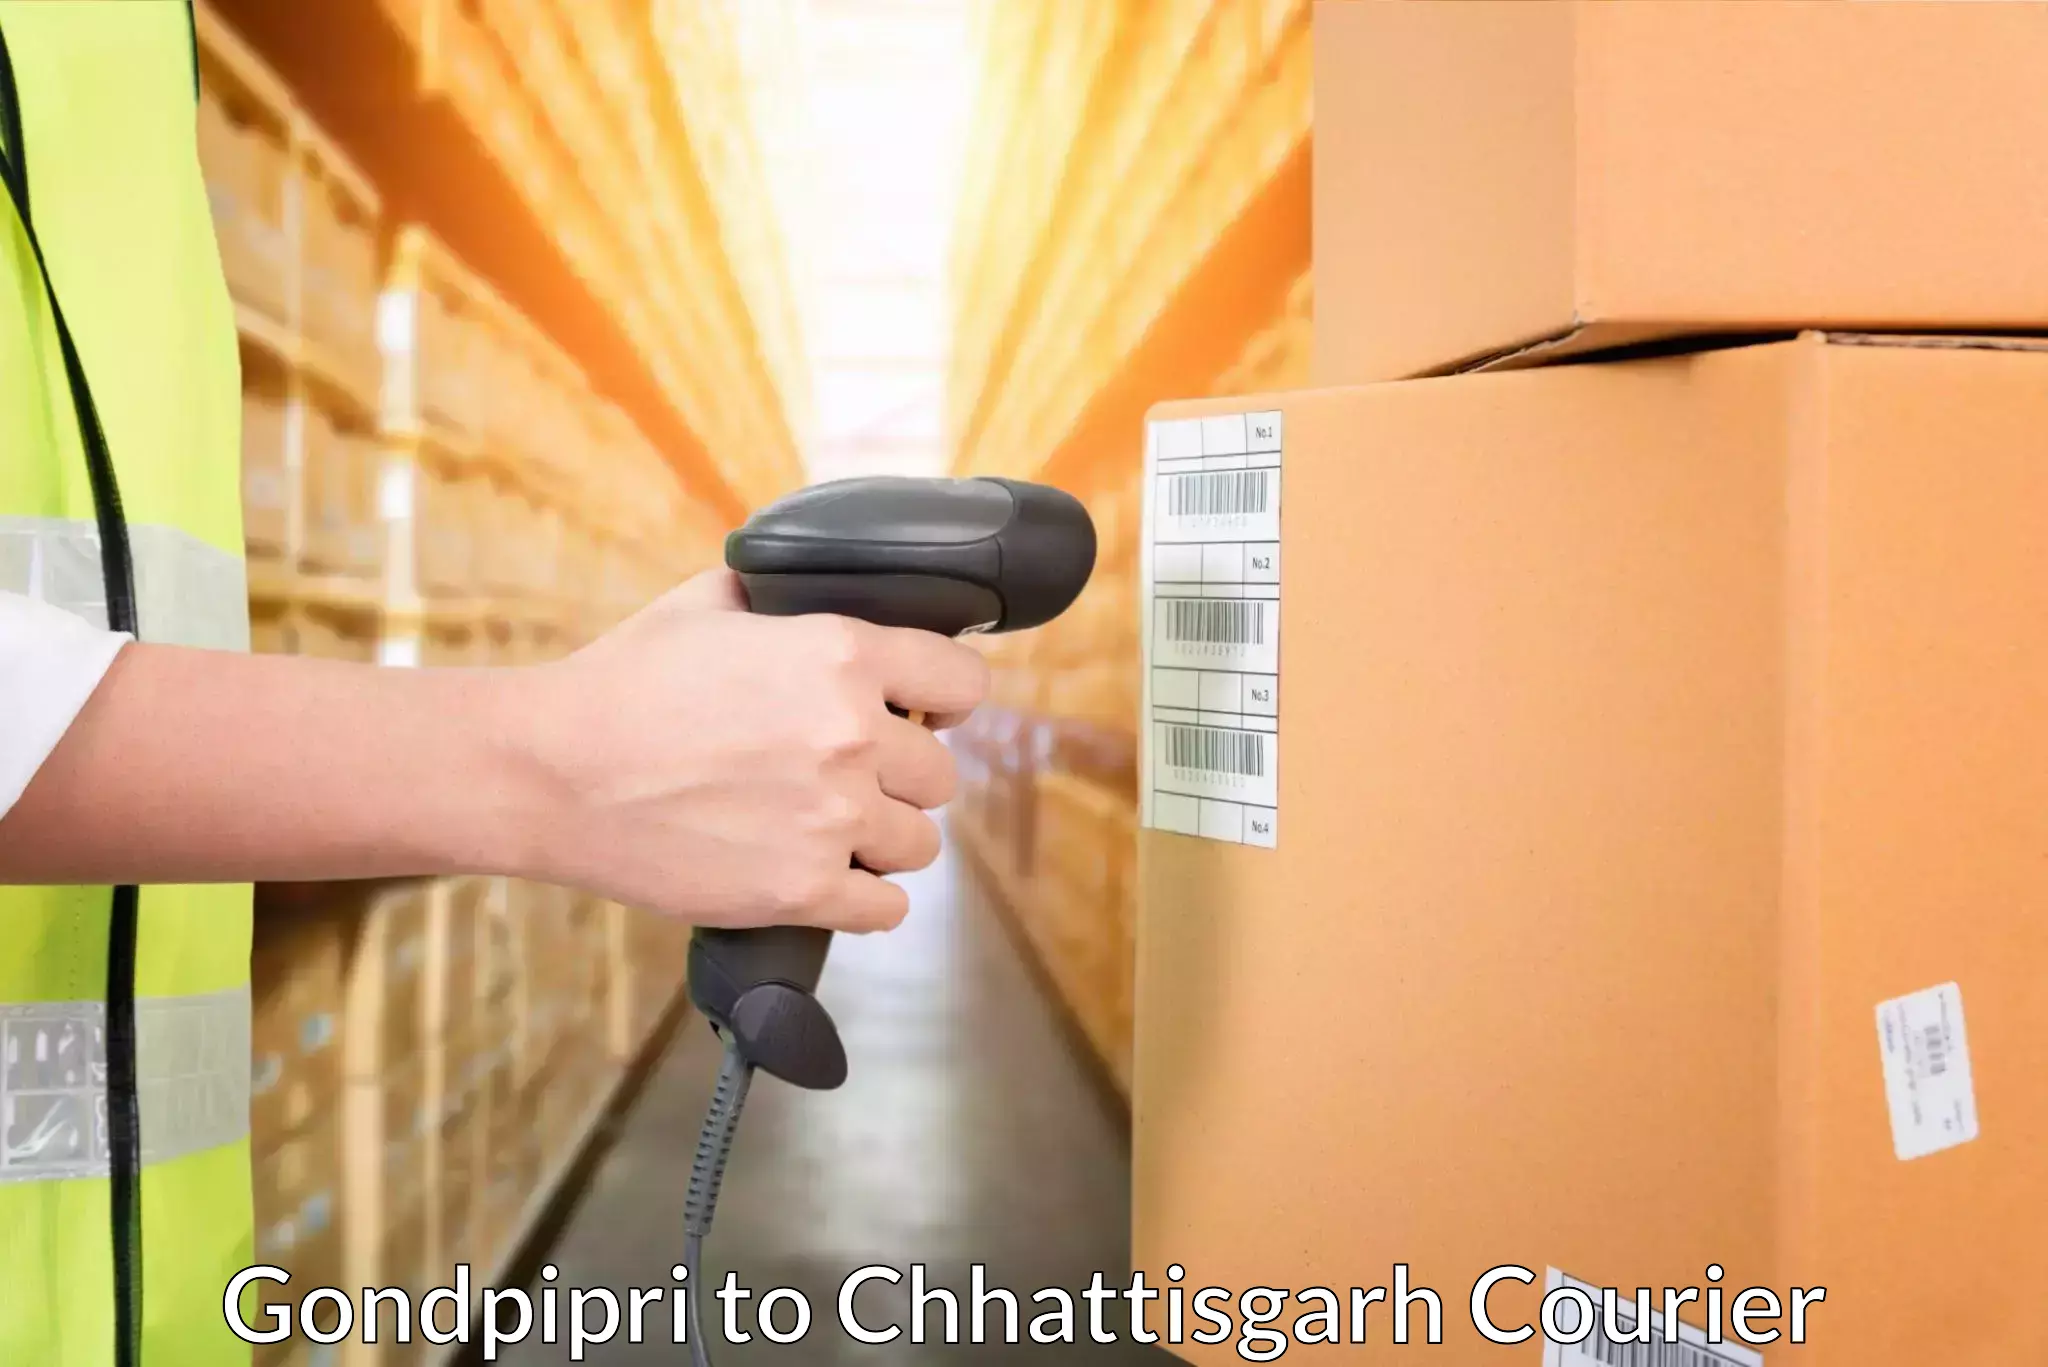 Fast shipping solutions in Gondpipri to Chhattisgarh